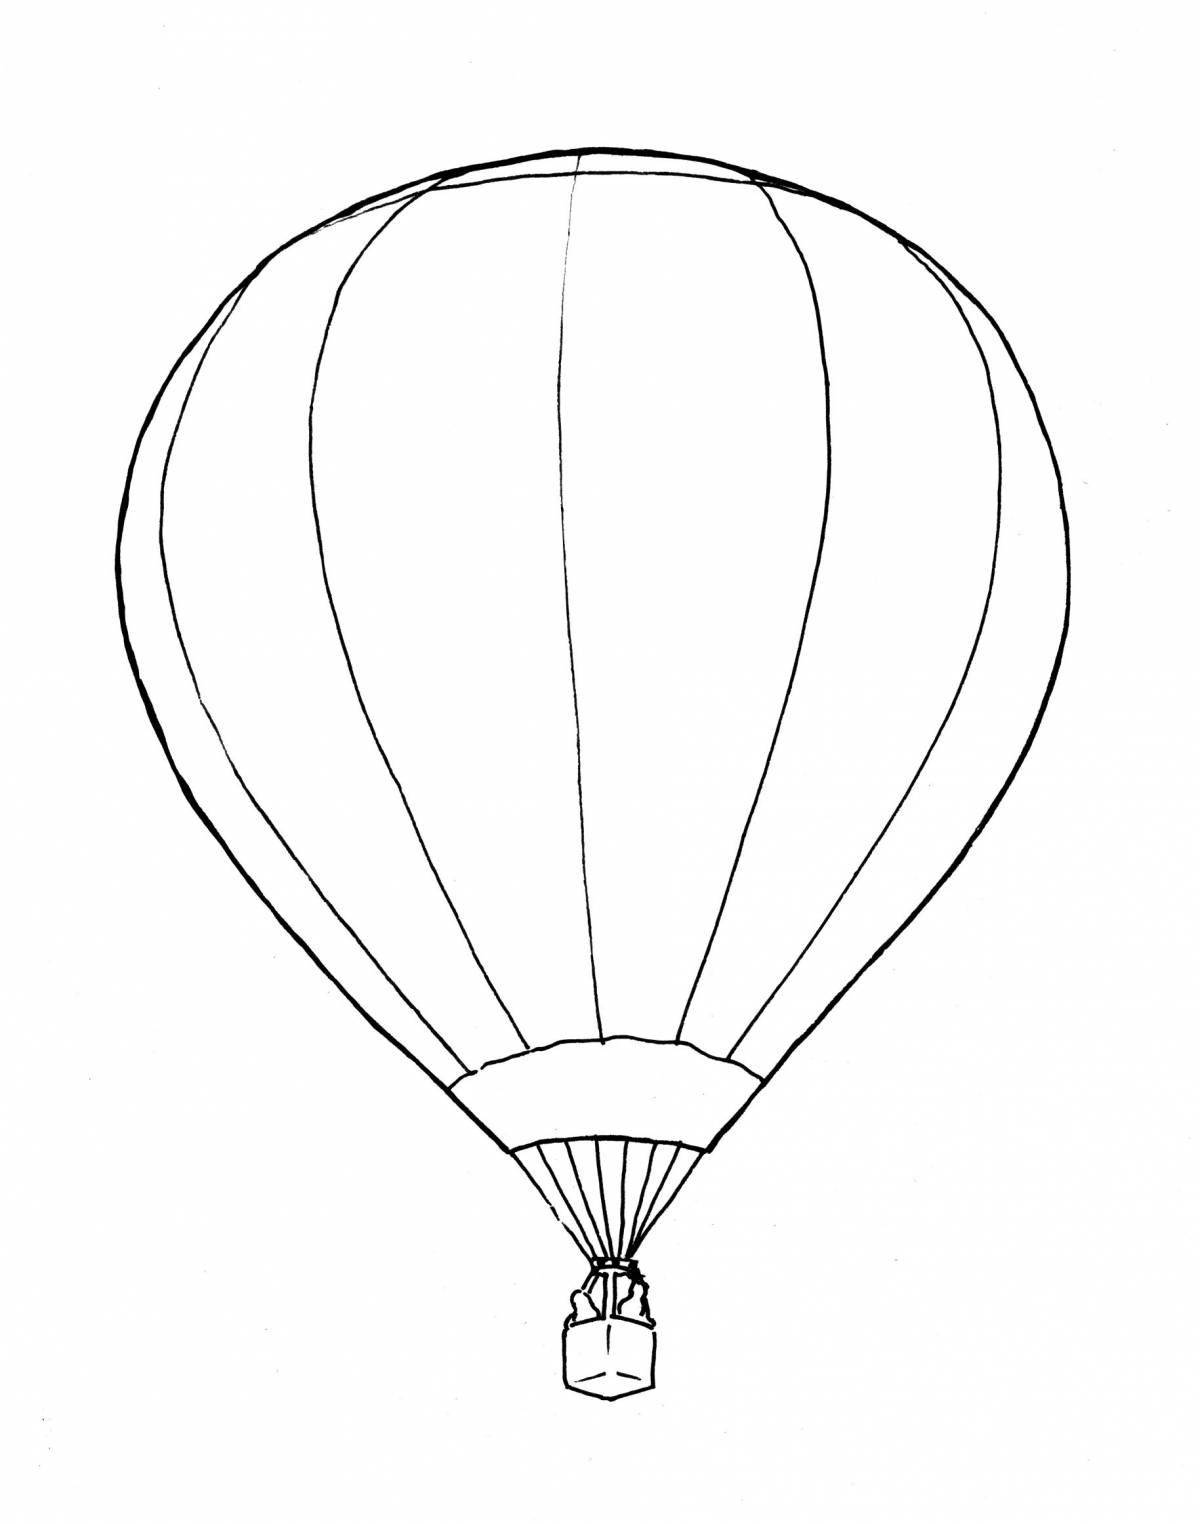 Adorable hot air balloon drawing